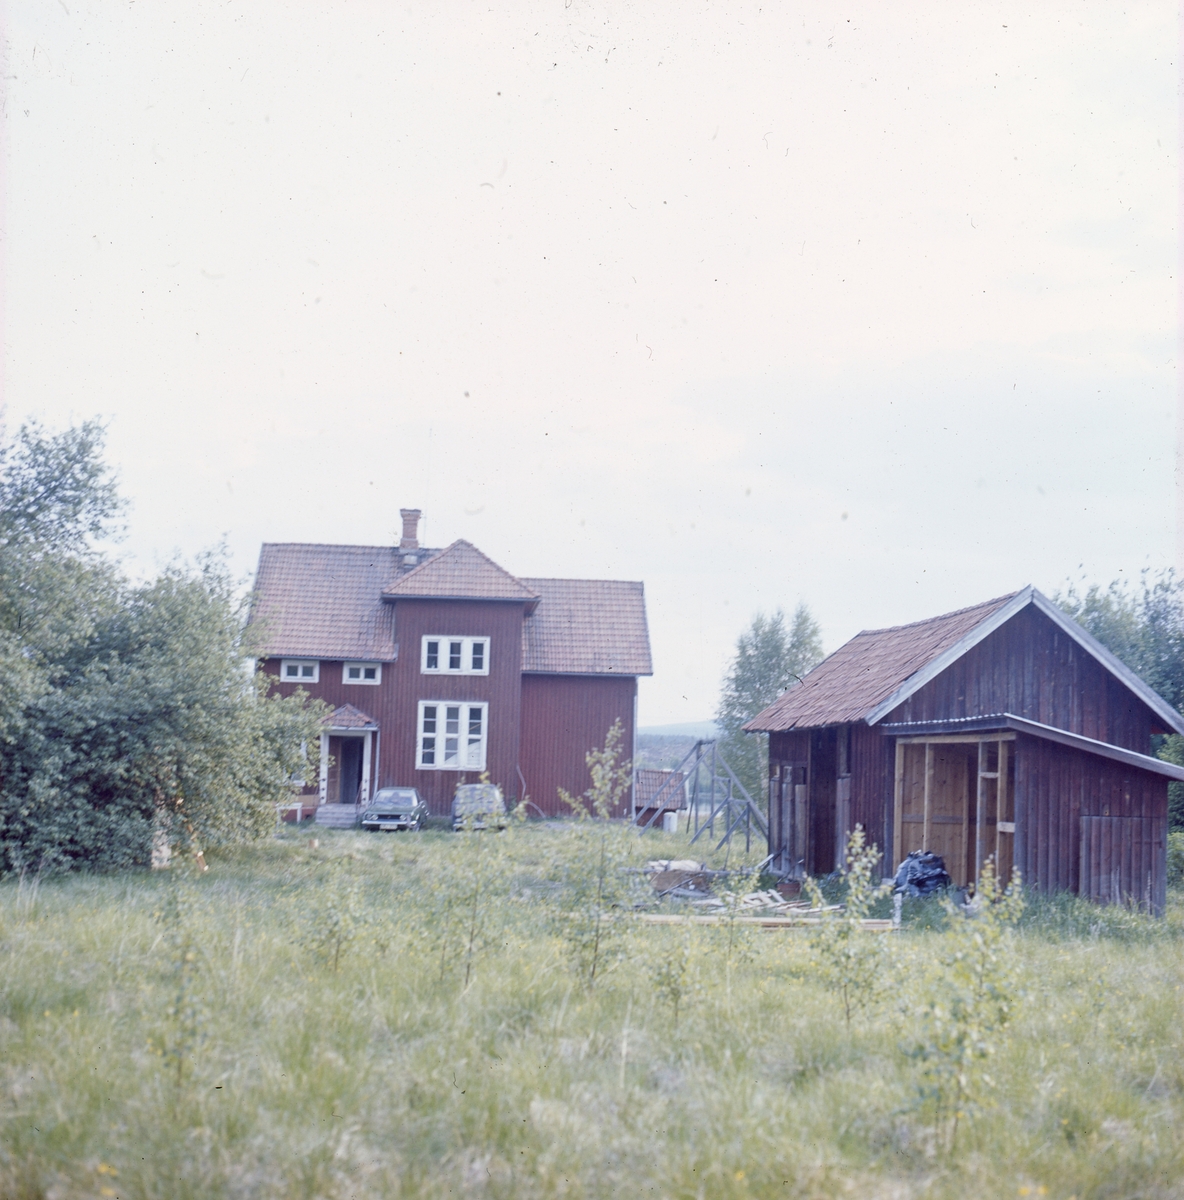 Bilden föreställer den skola som silversmeden Rosa Taikon och hennes man Bernd Janusch köpte kring 1970. Paret byggde om skolan till silververkstad och bostad. De flyttade till skolan i Flor, Ytterhogdal år 1973.